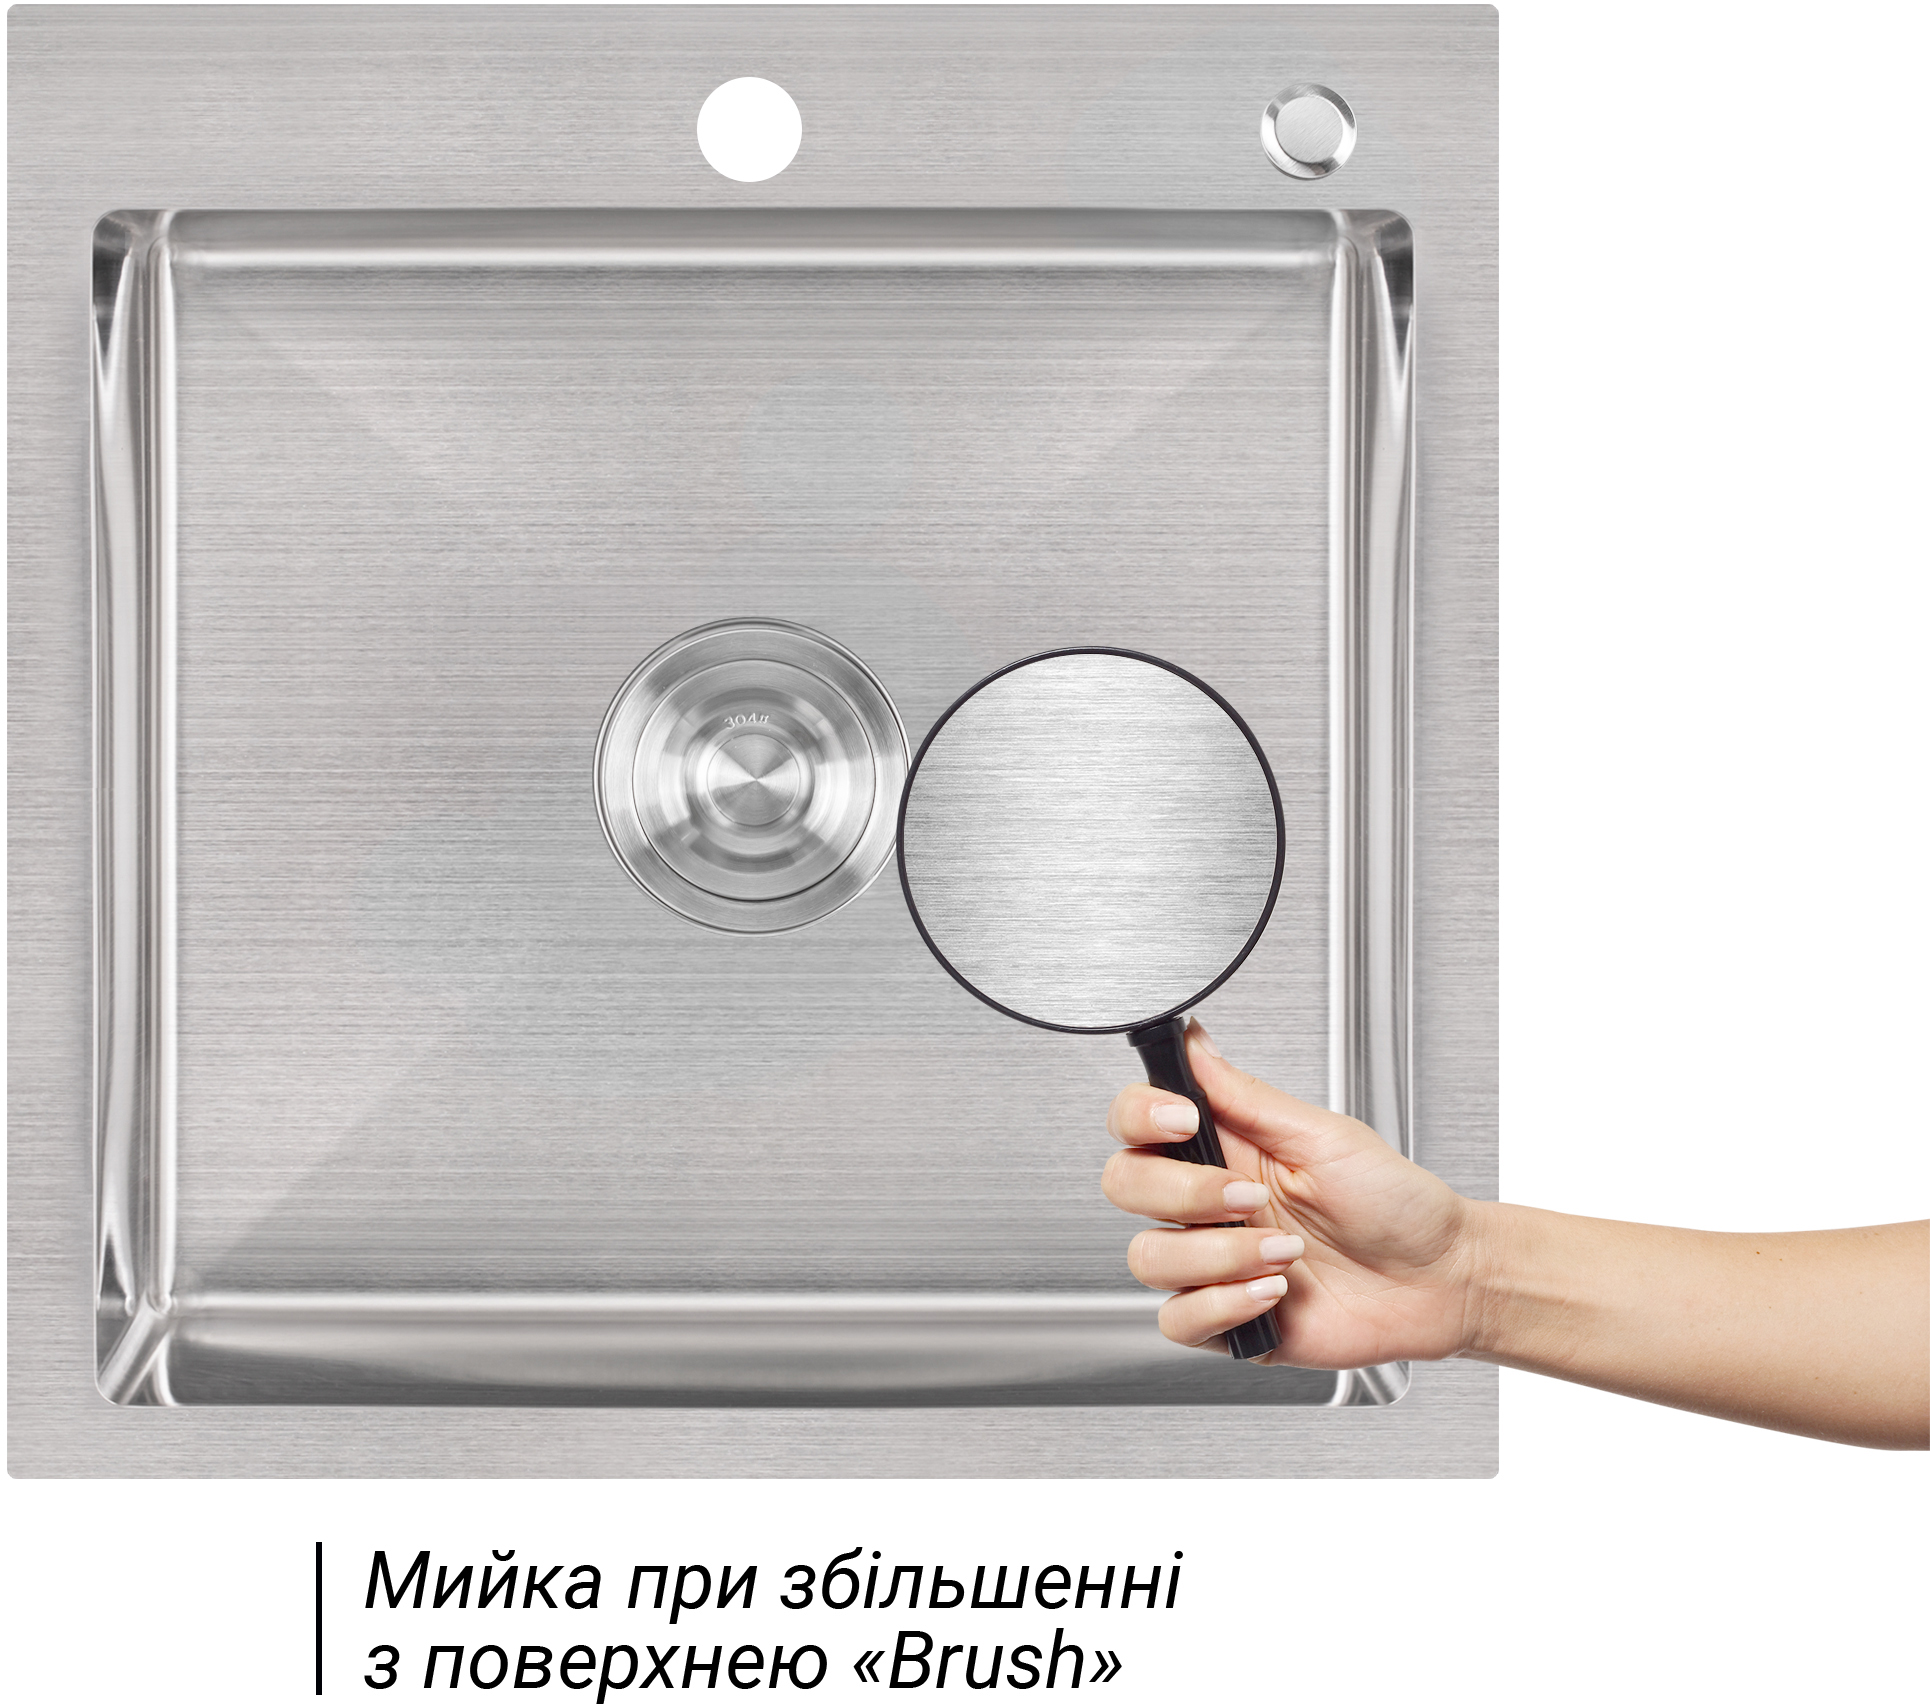 Набор 2 в 1 кухонная мойка + дозатор Lidz H5050 3.0/1.0 мм Brush цена 2619 грн - фотография 2